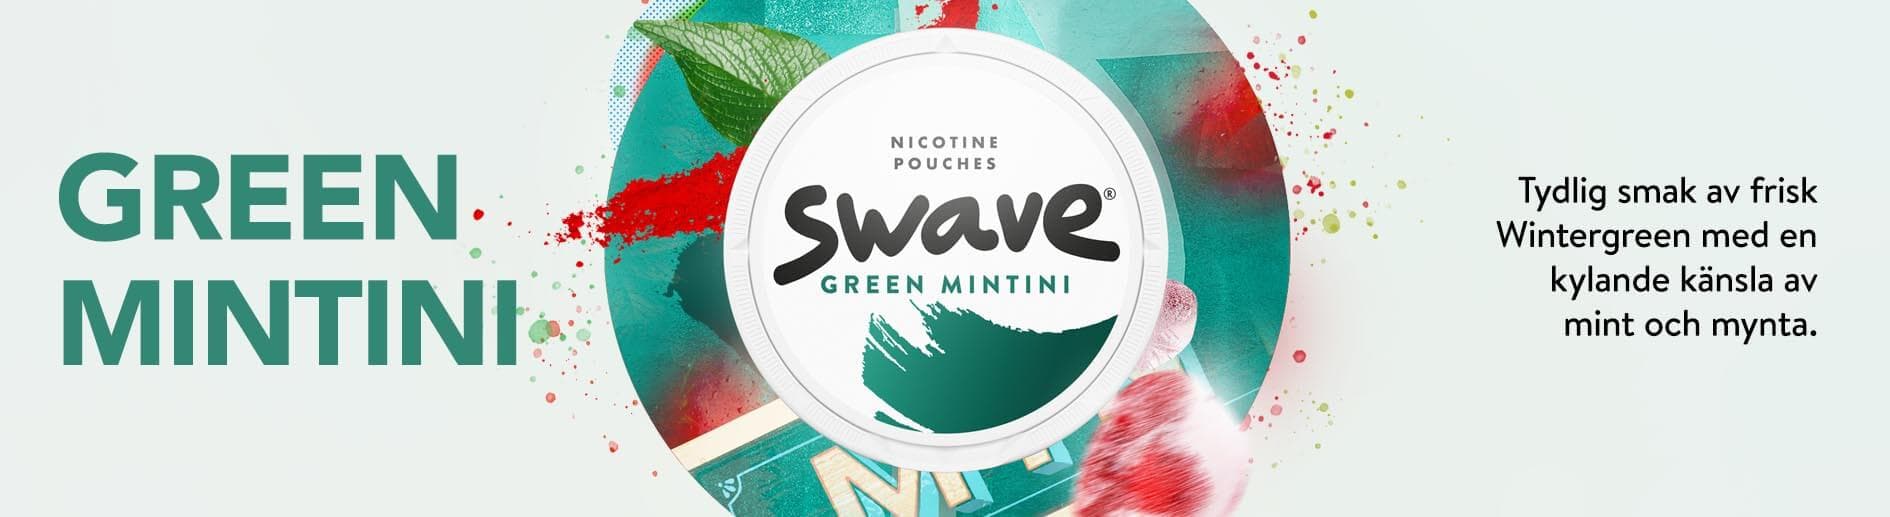 swave green mintini - en nyhet från Gotland